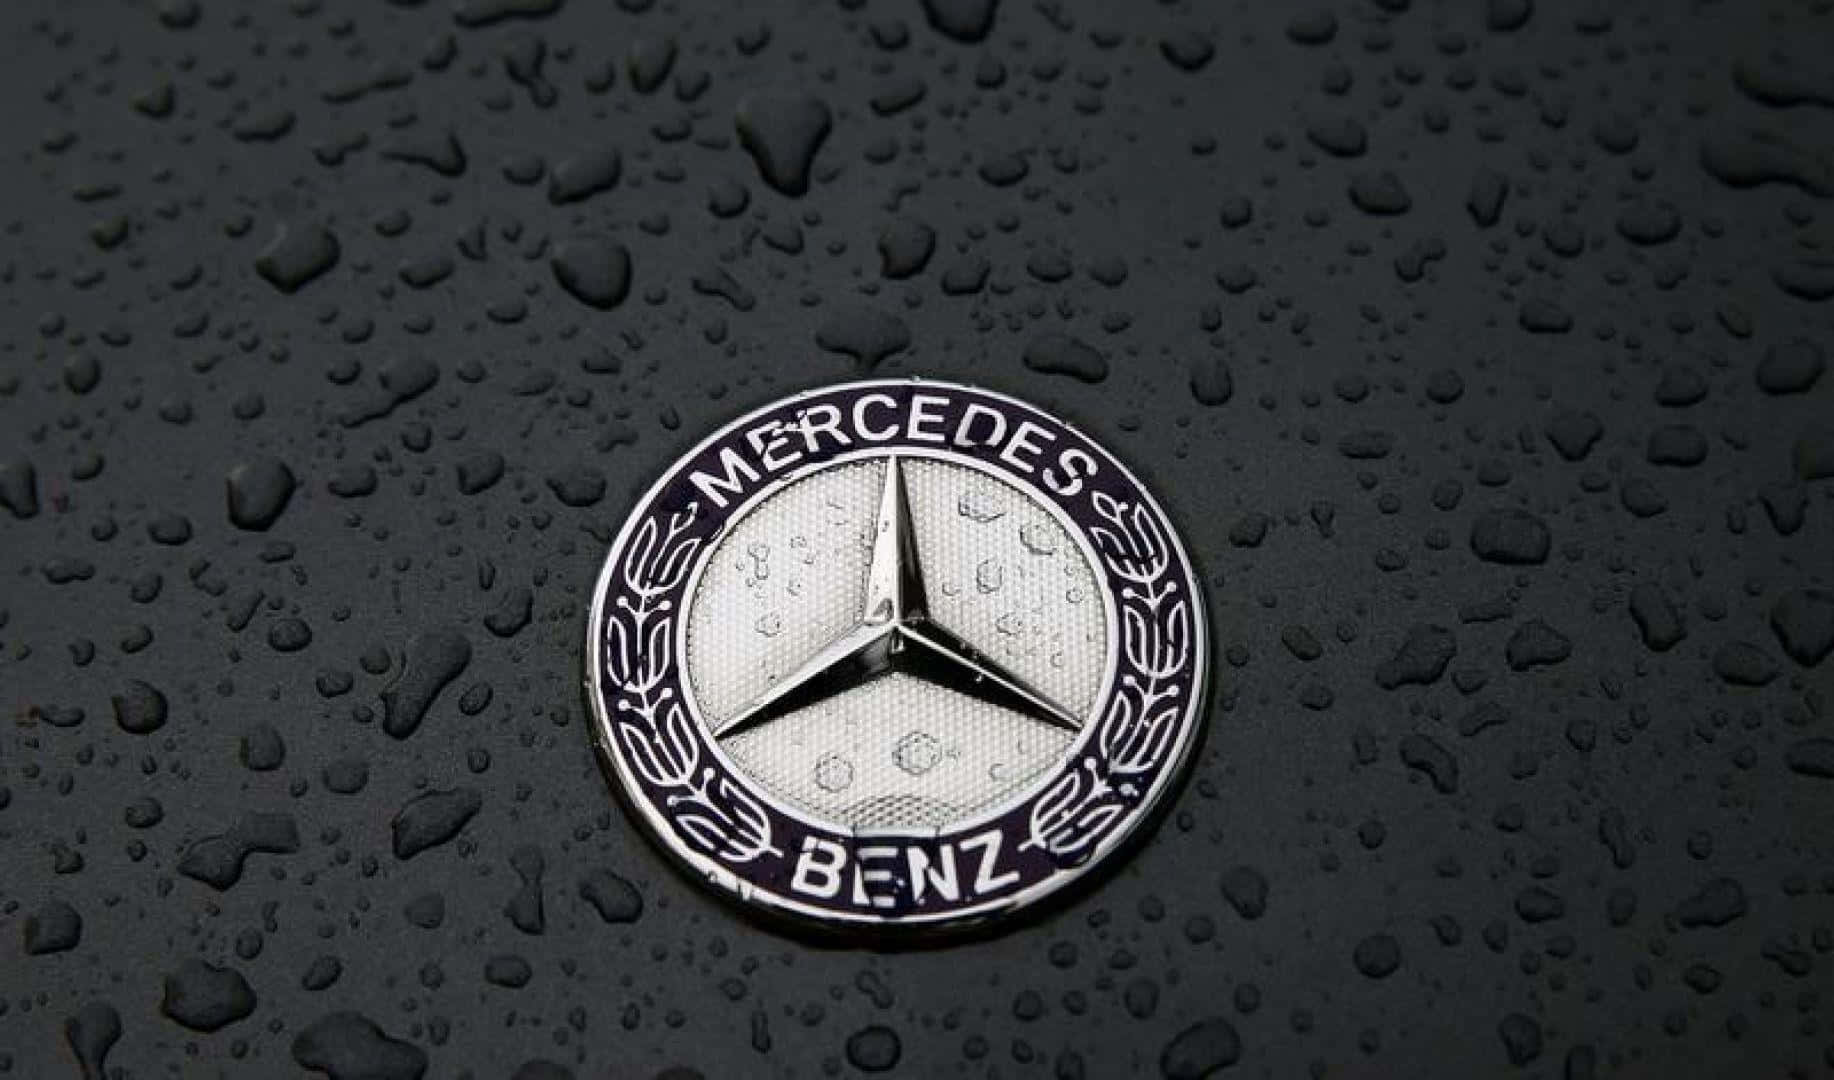 Ellogo De Mercedes Benz Simboliza Lujo, Rendimiento Y Estilo.